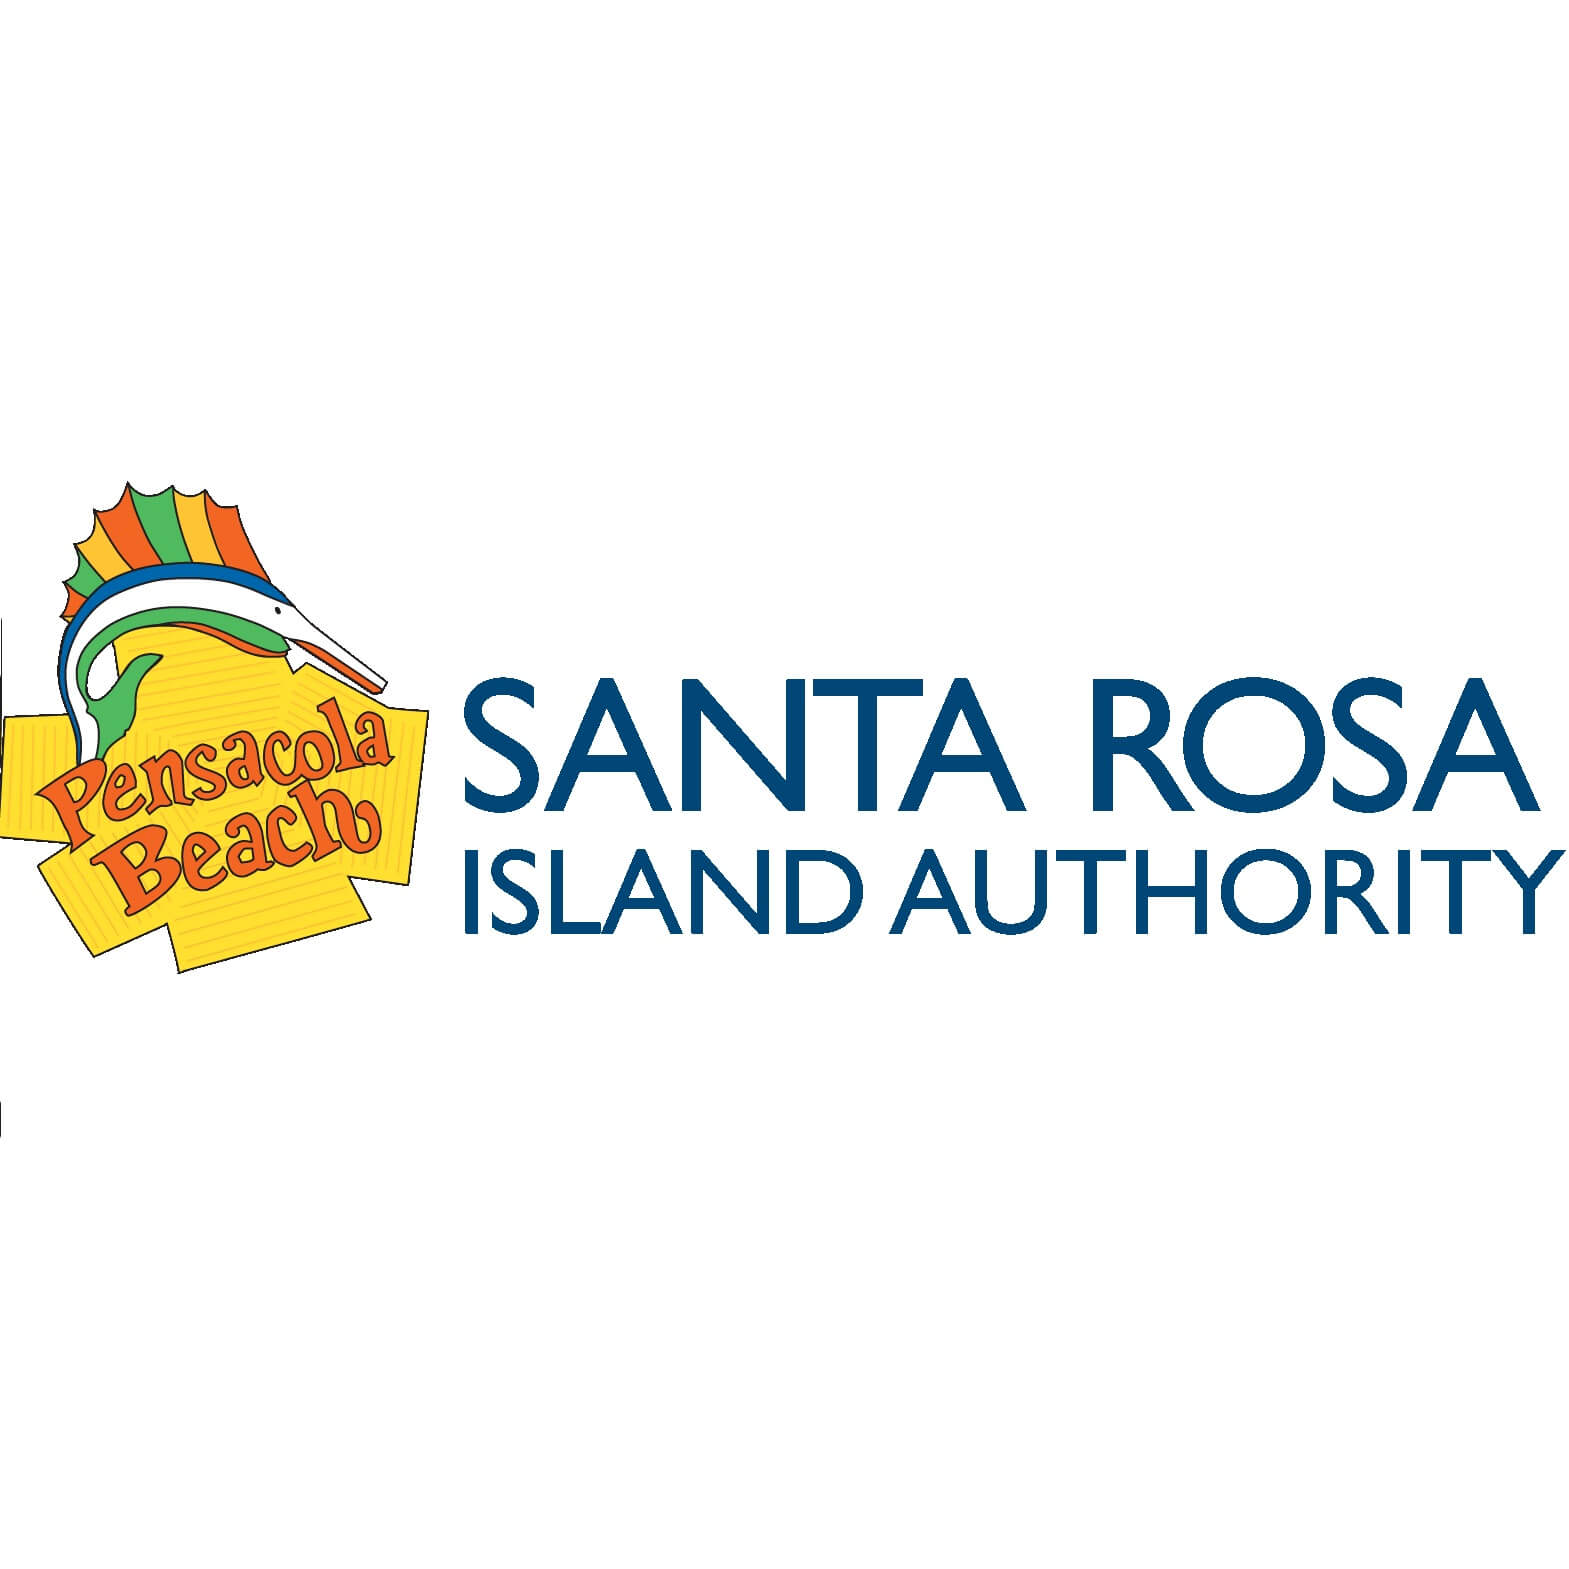 Santa Rosa Island Authority